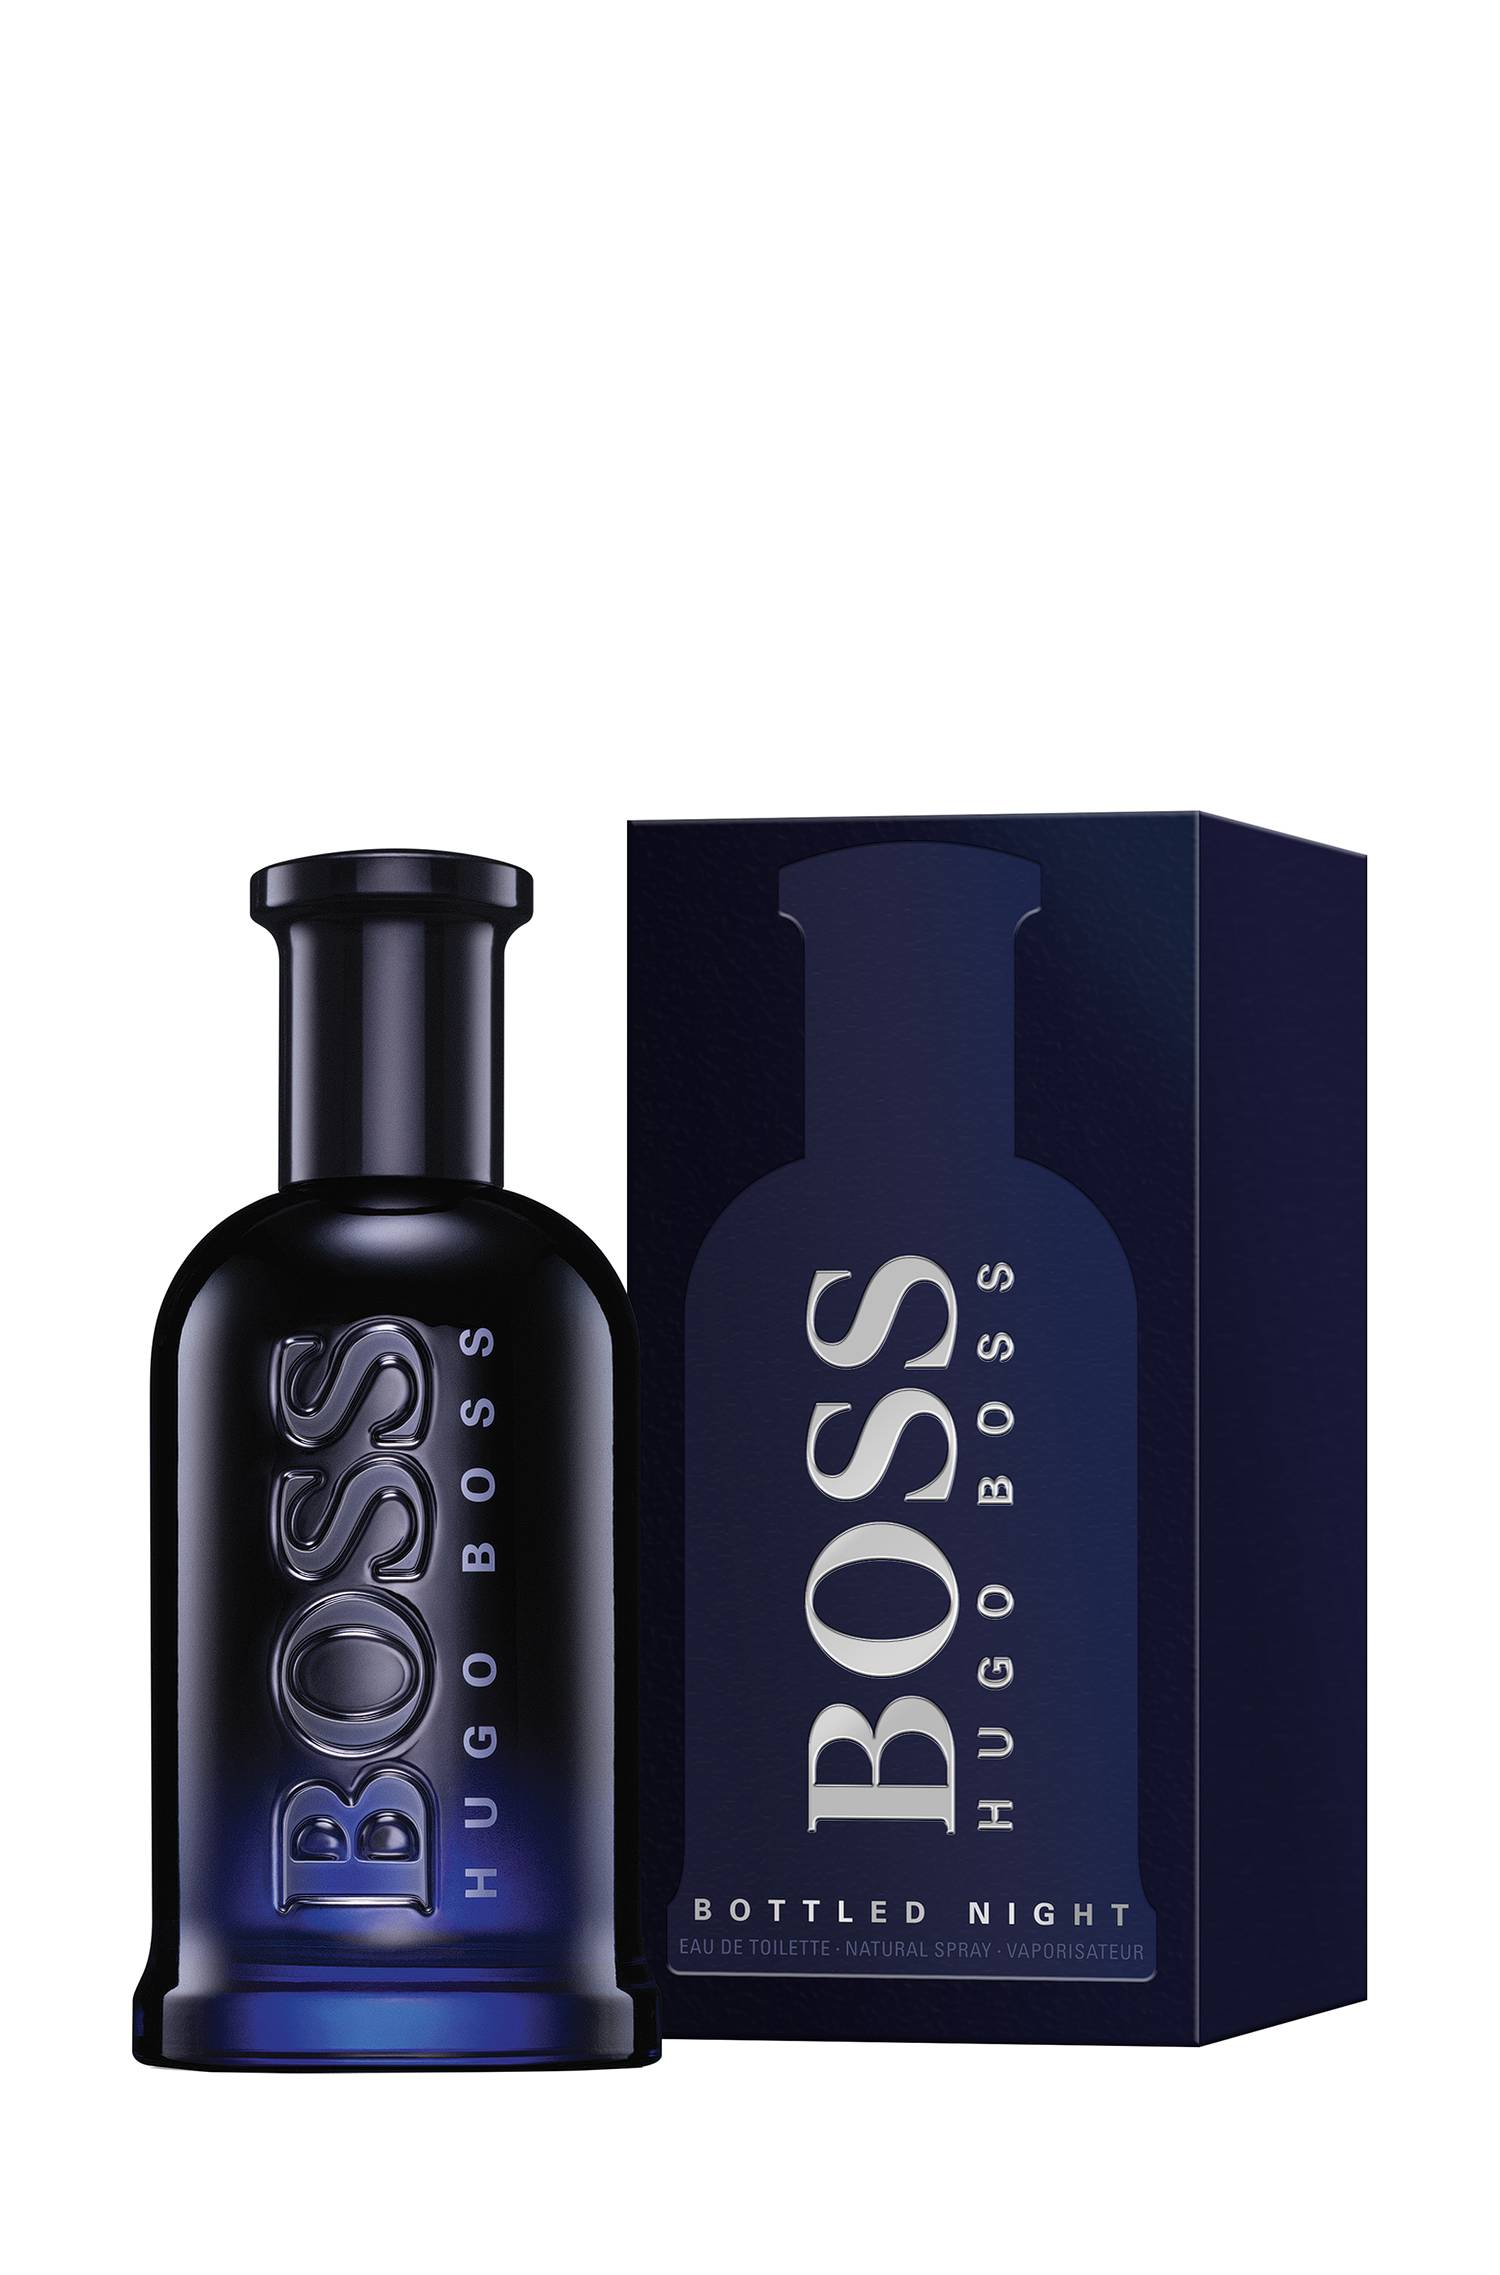 Hugo Boss Bottled Night for Men Eau de Toilette Spray 6.7 oz / 200 ml ...